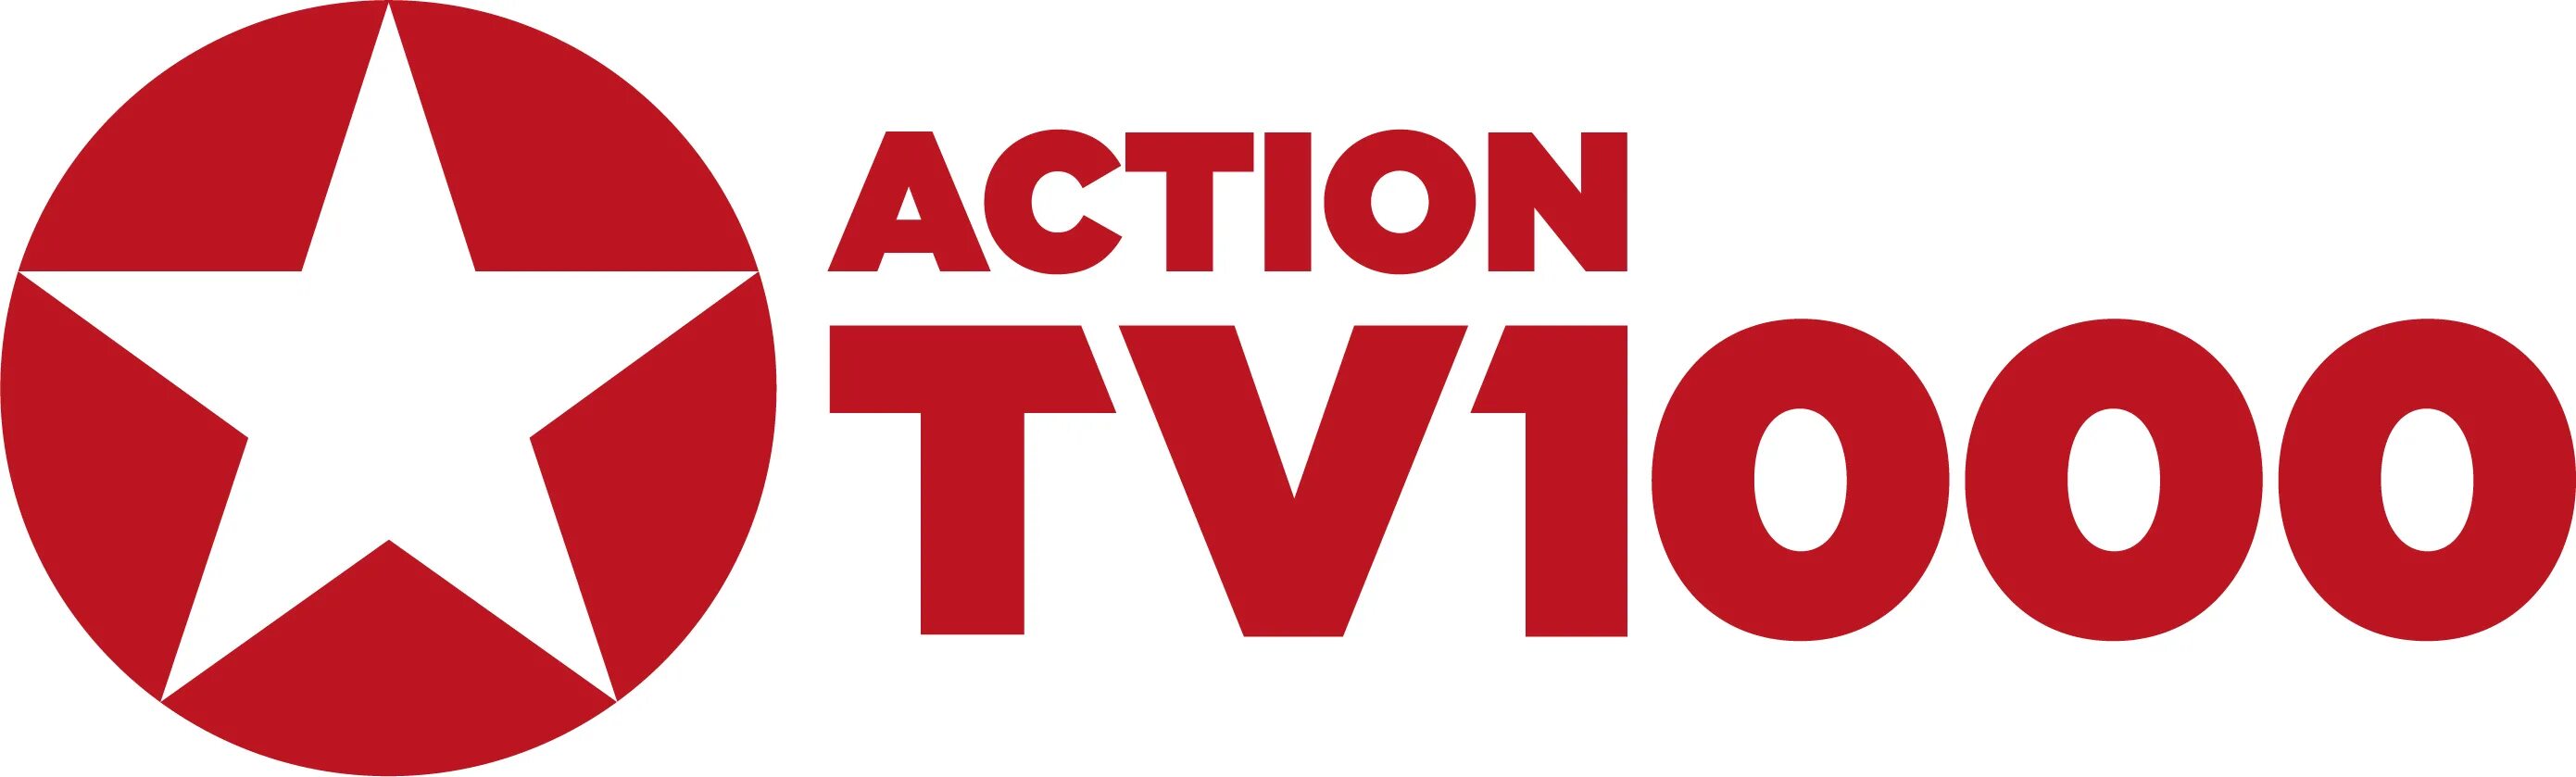 Канал тв1000 хорошего качества. Tv1000. Tv1000 Action. Телеканал tv1000 Action. Логотип телеканала tv1000 Action.